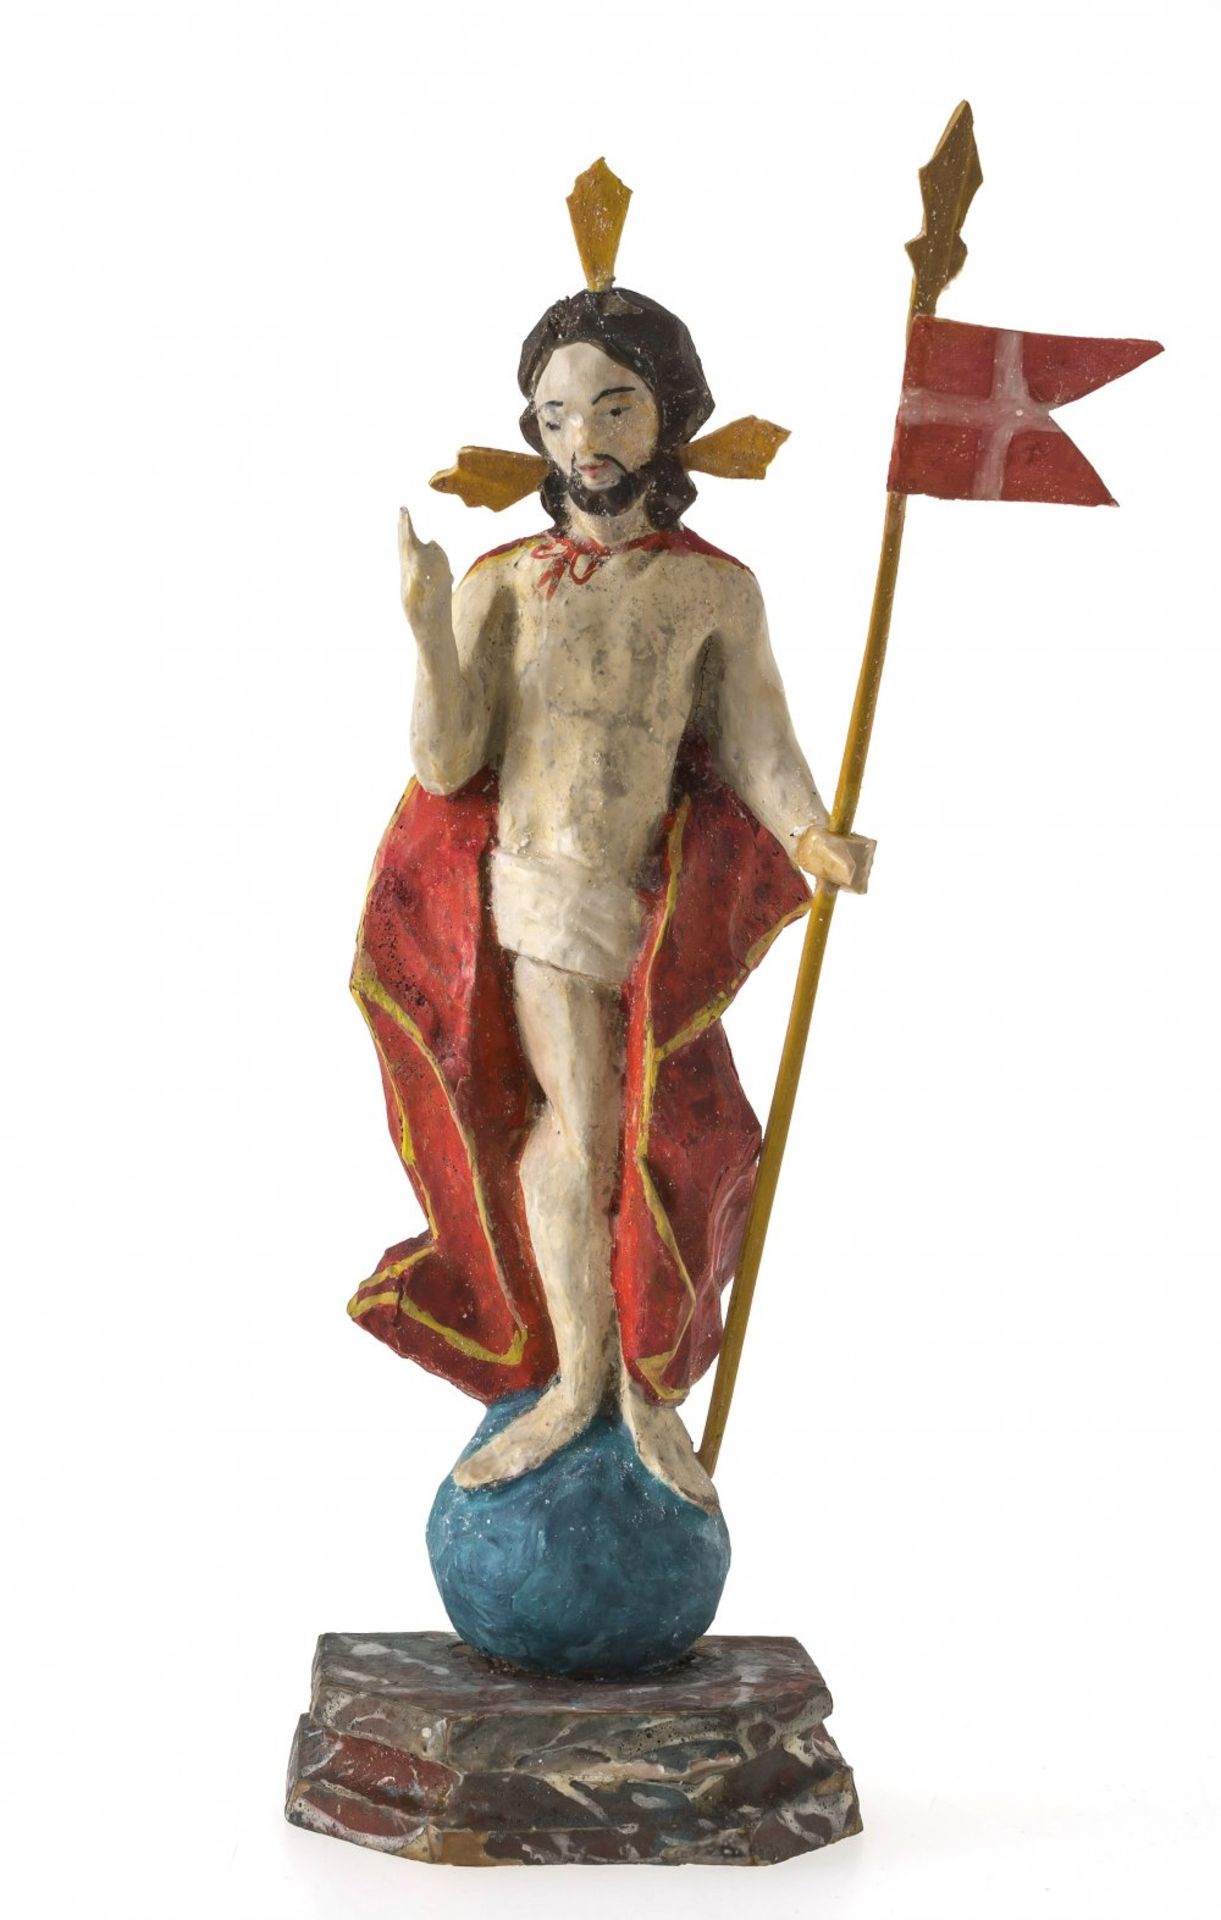 AuferstehungschristusOberammergau, 19. Jh. Holz, farbig gefasst. H. 18,5 cm.- - -27.00 % buyer's